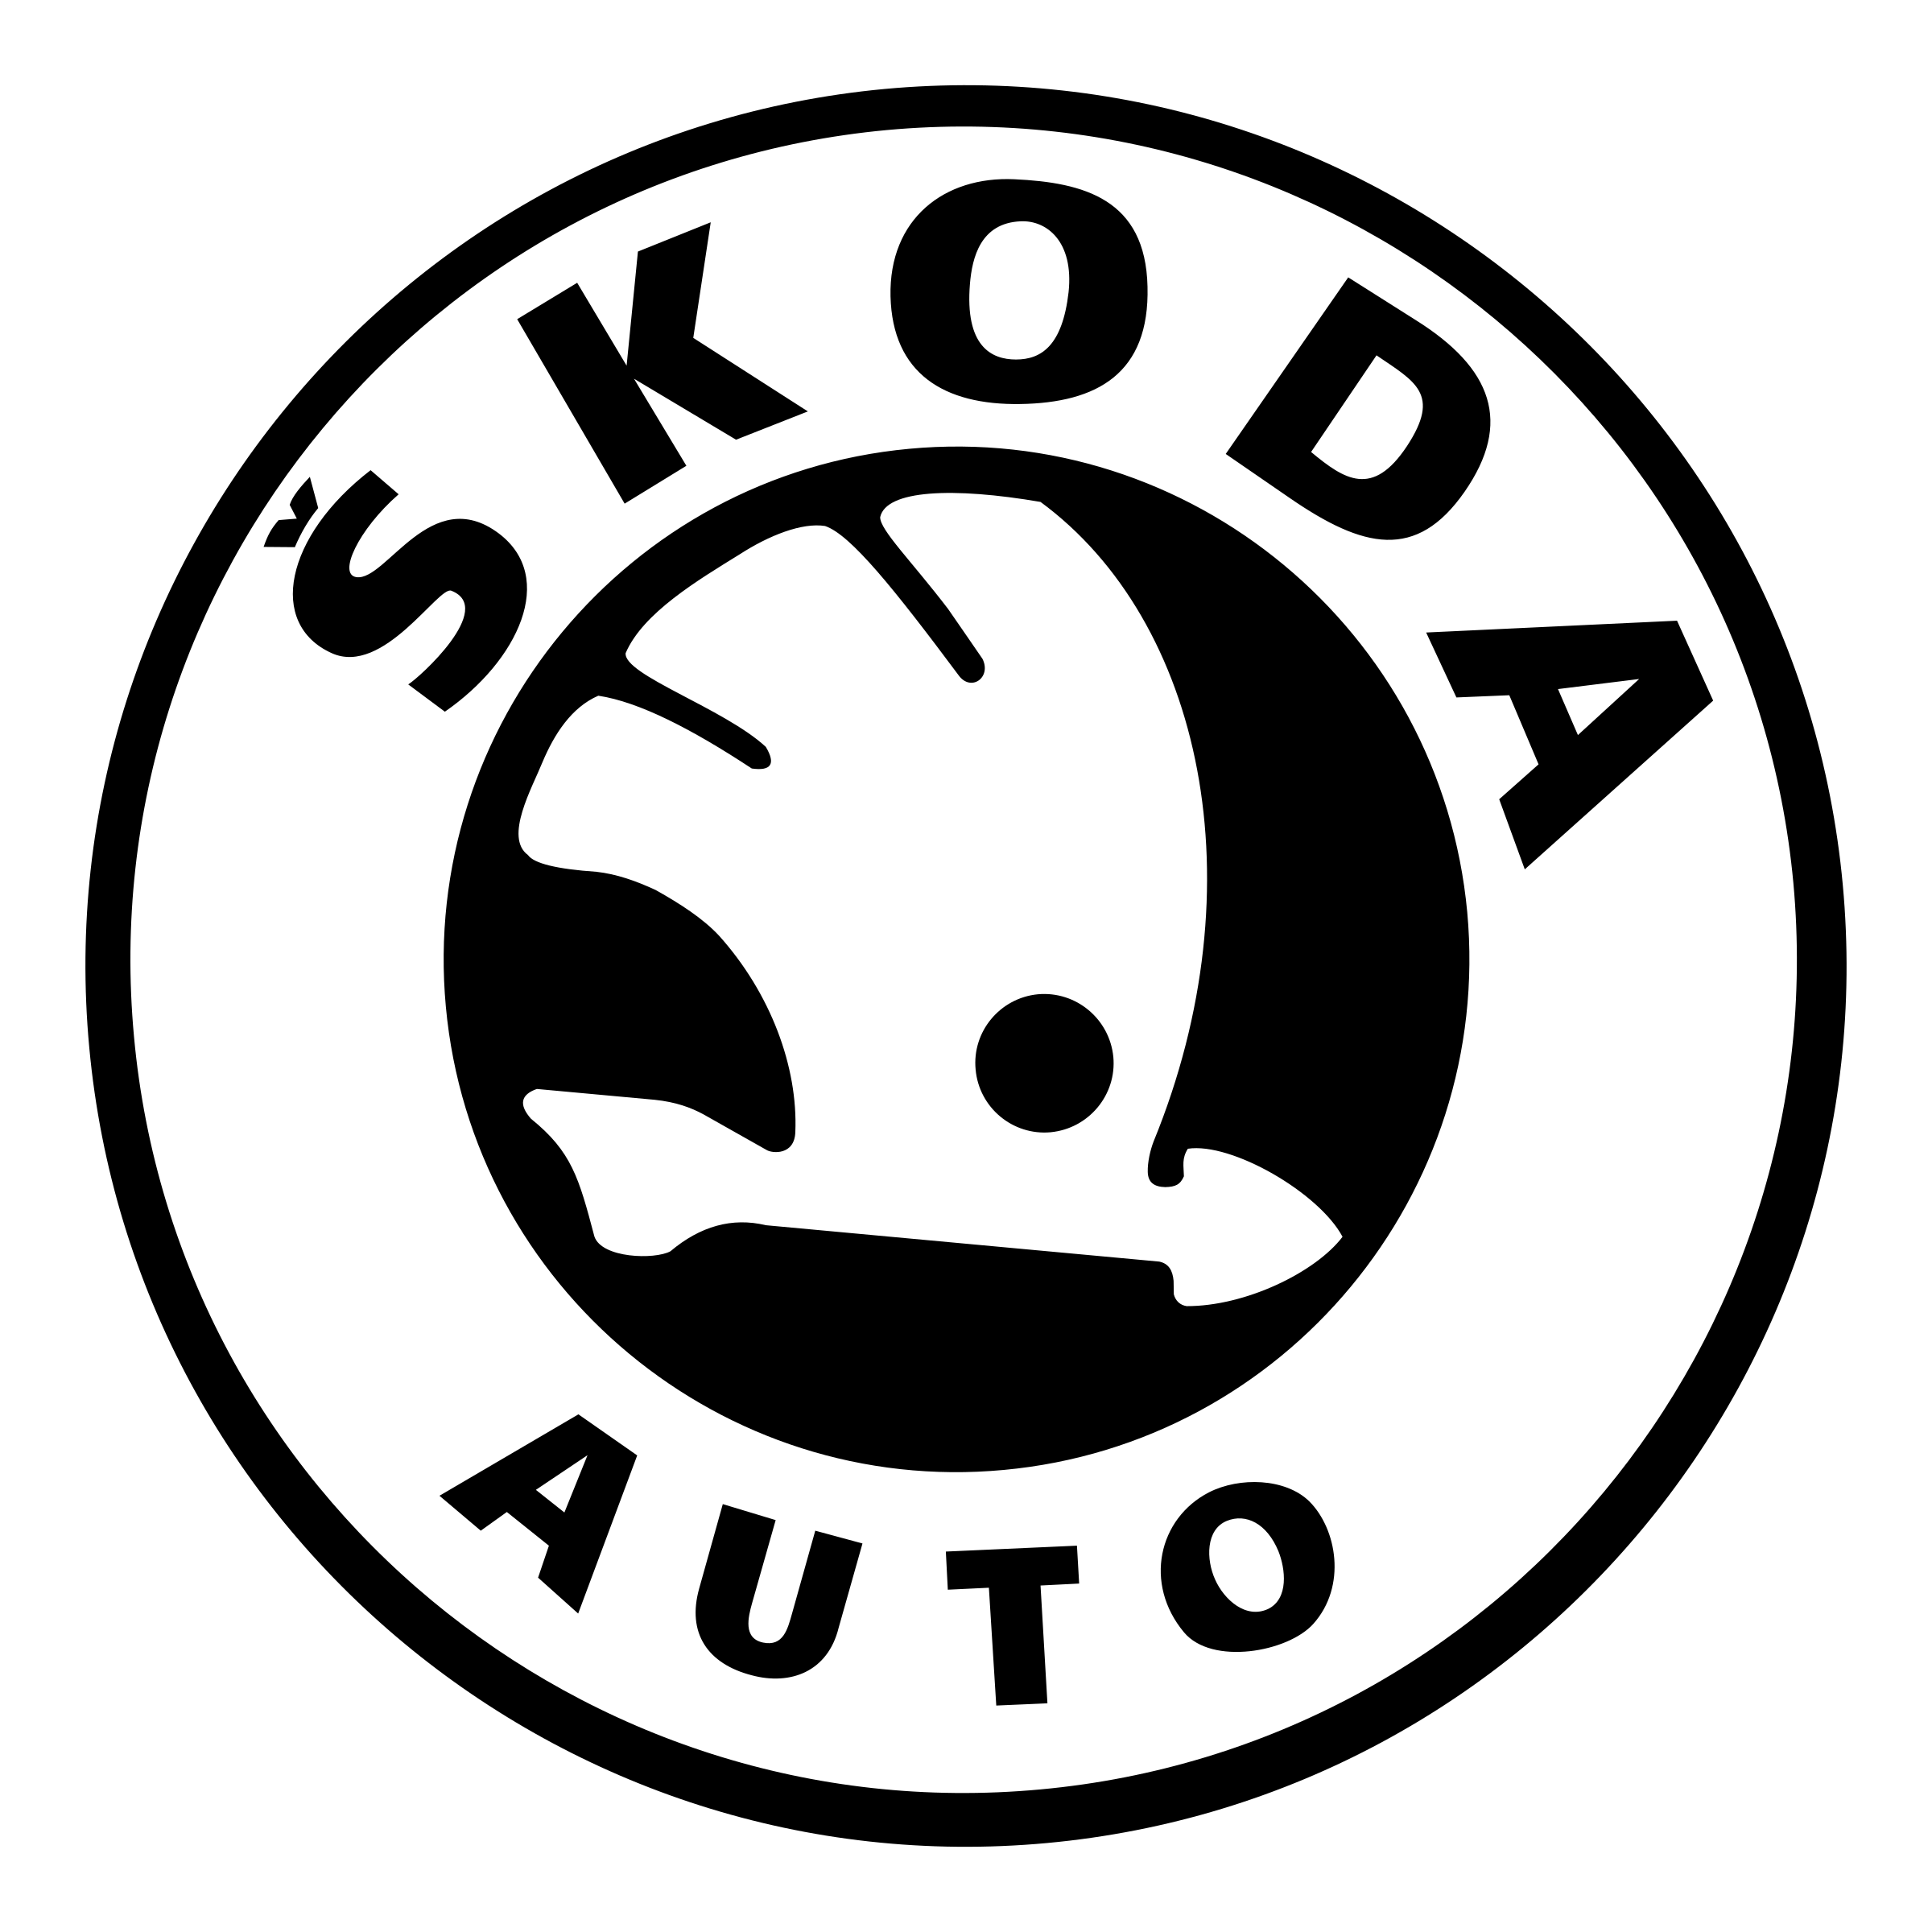 Skoda Logo Vector Free Downlo